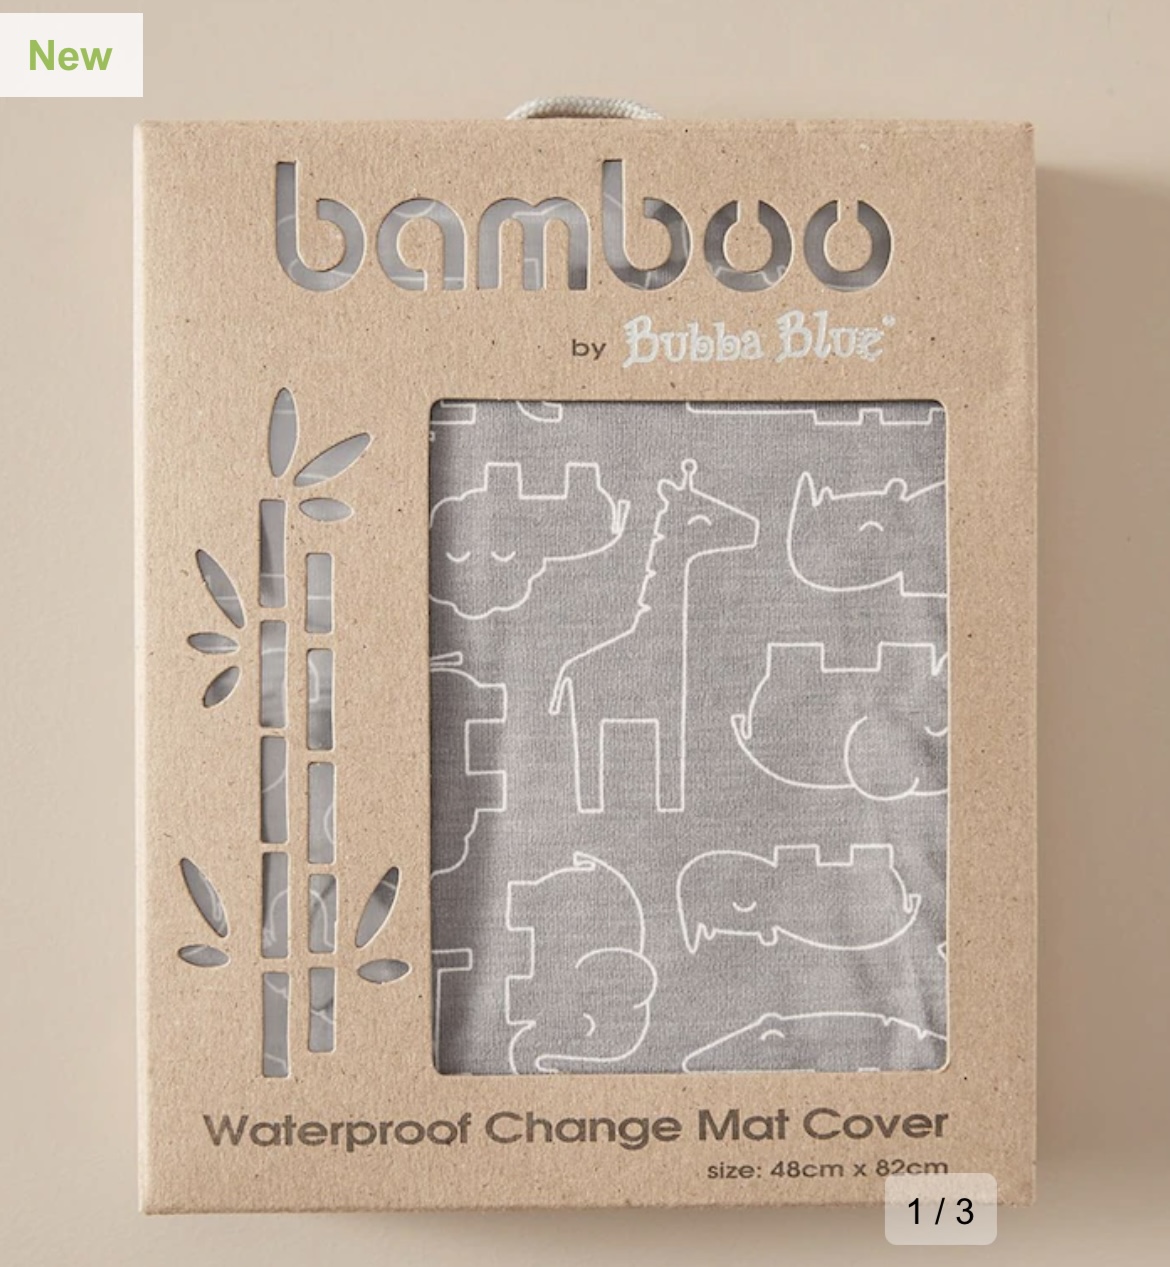 Bubba Blue Bamboo Waterproof Change Mat